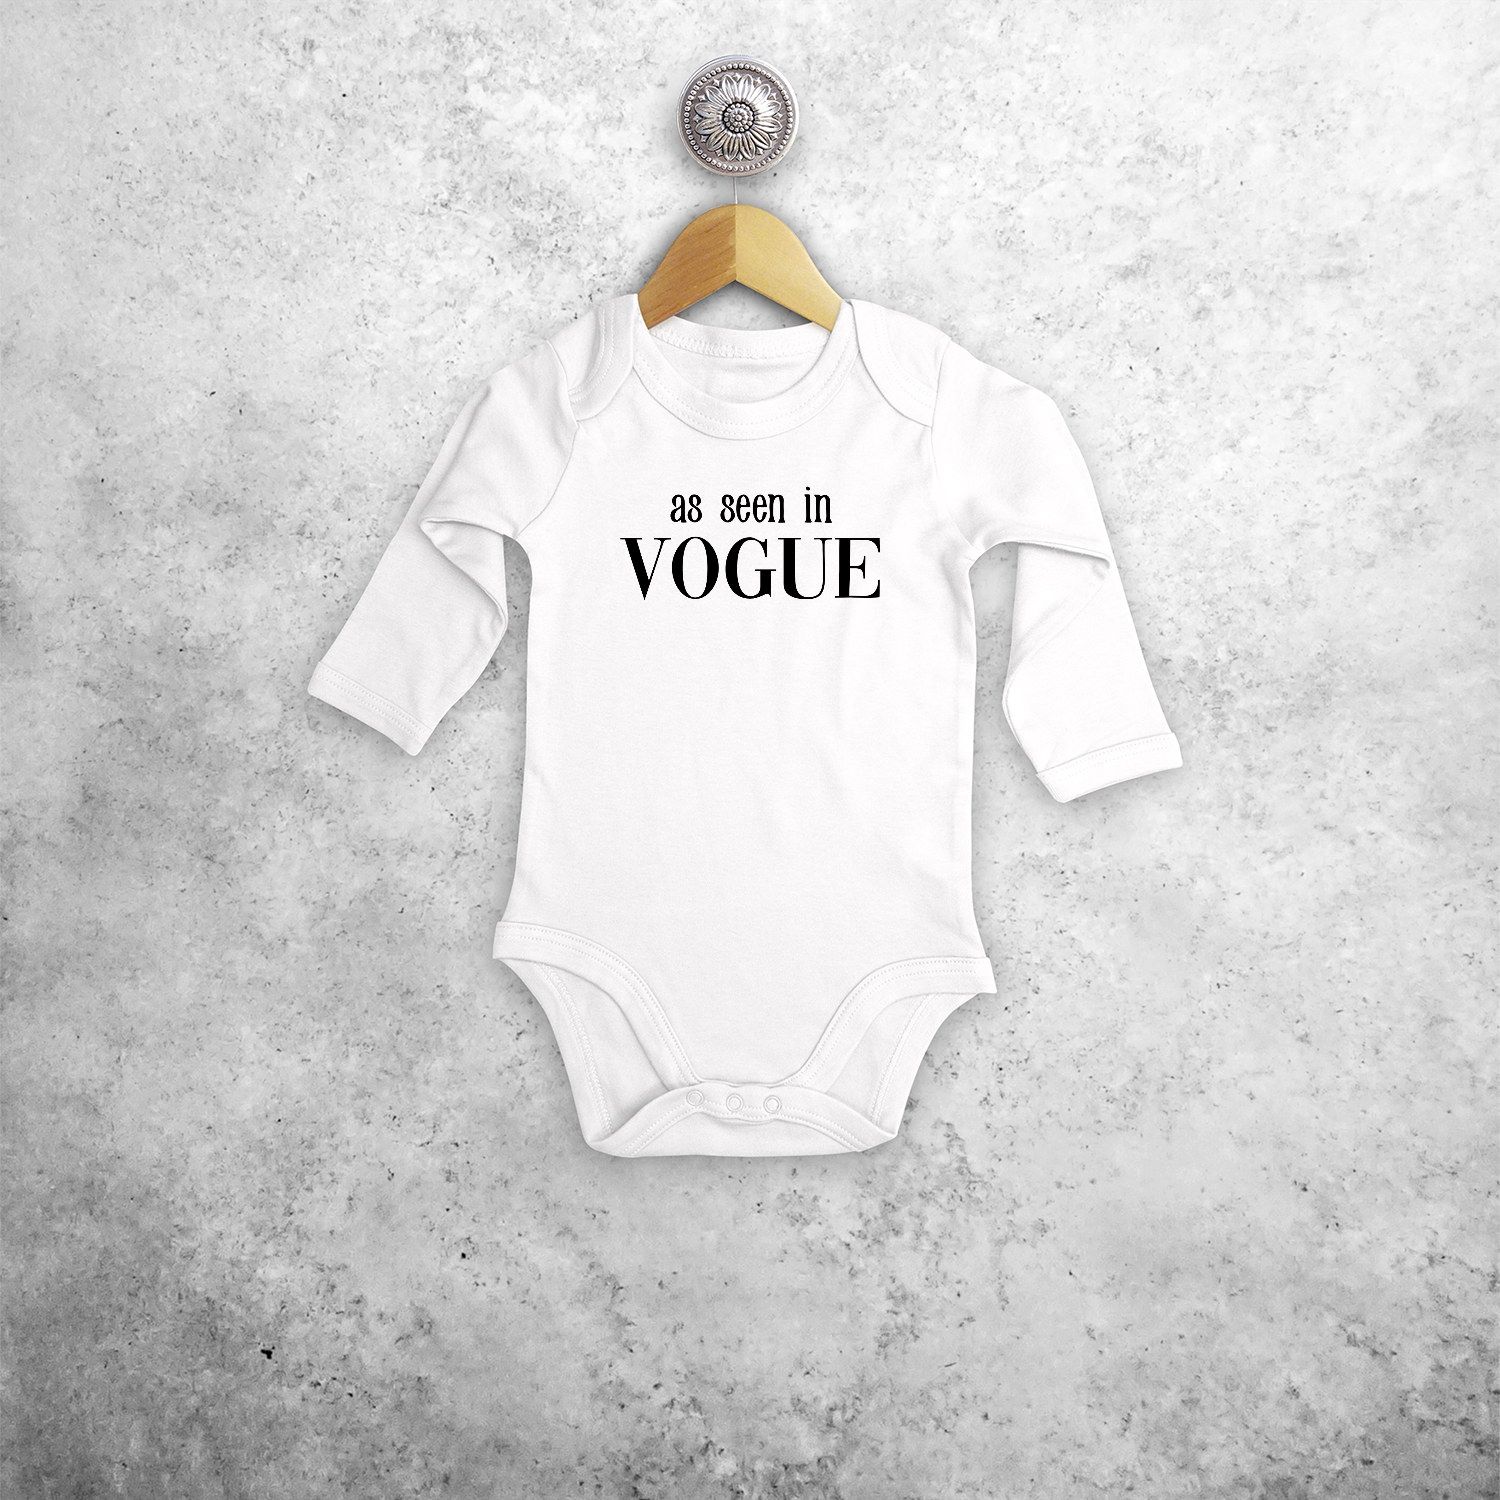 'As seen in Vogue' baby kruippakje met lange mouwen